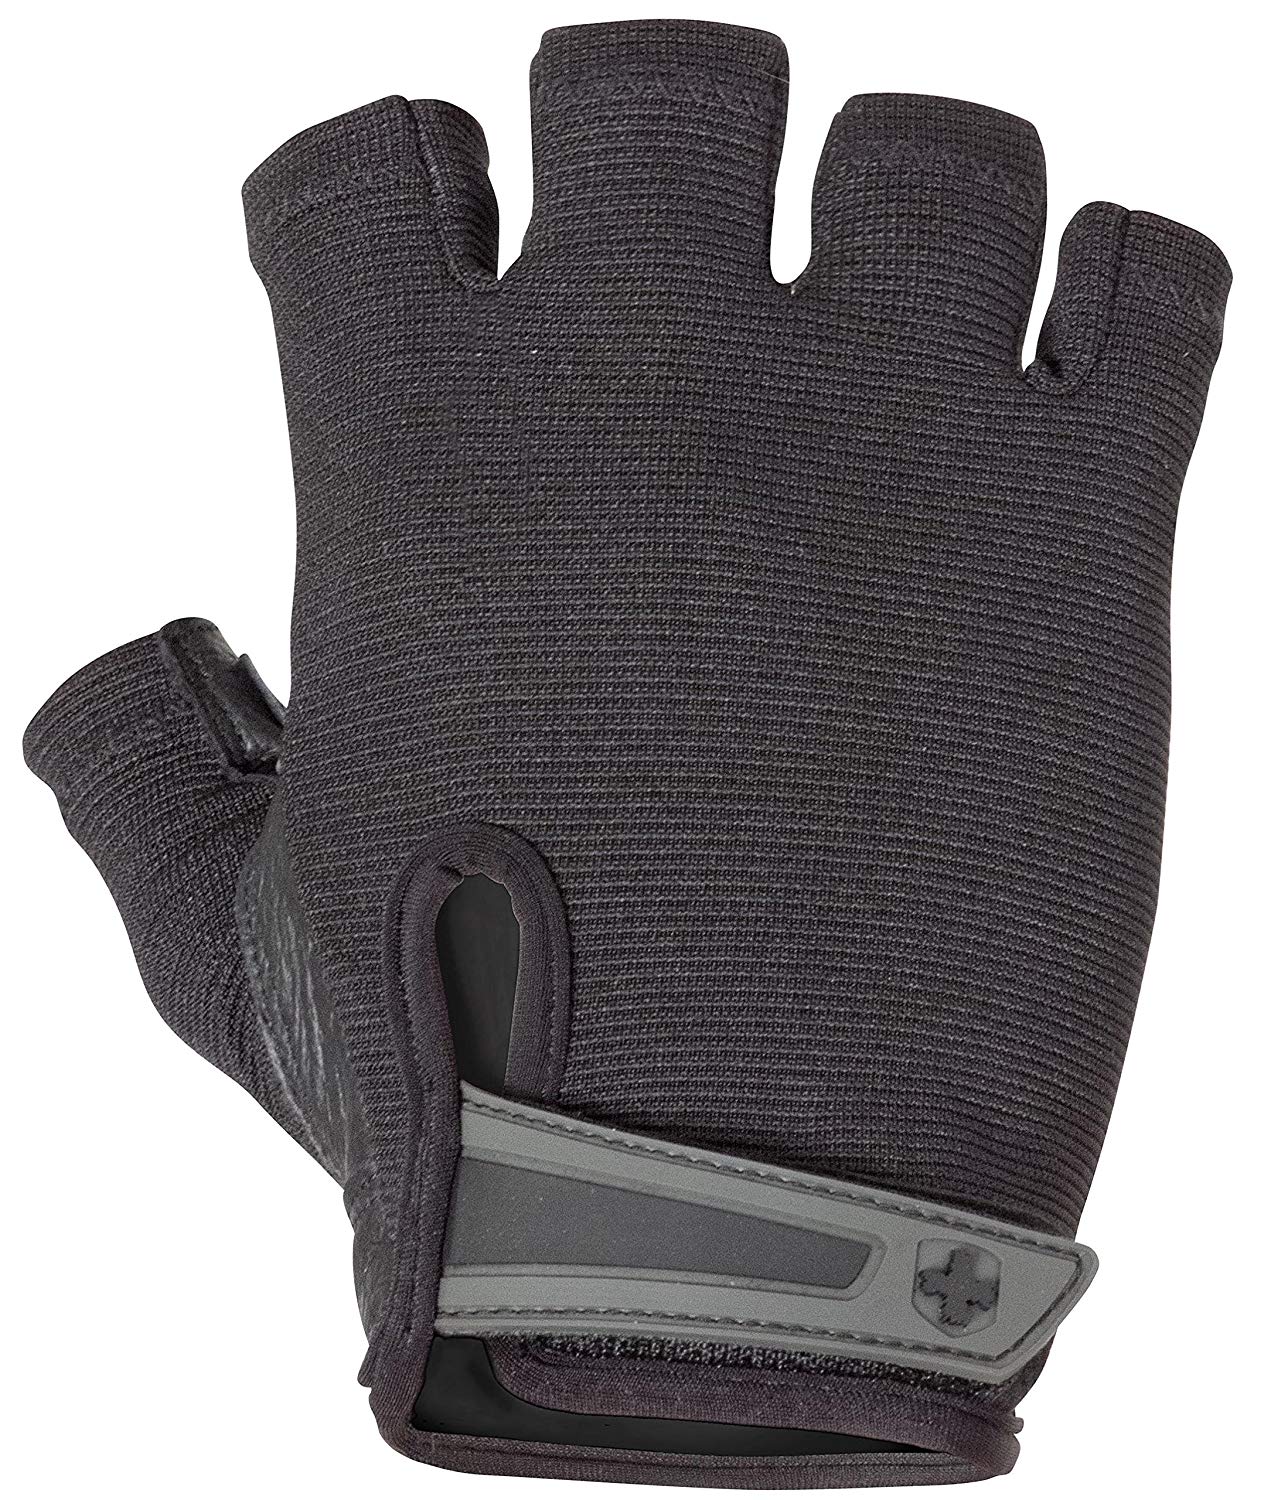  Harbinger Power Non-Wristwrap Weightlifting Gloves 